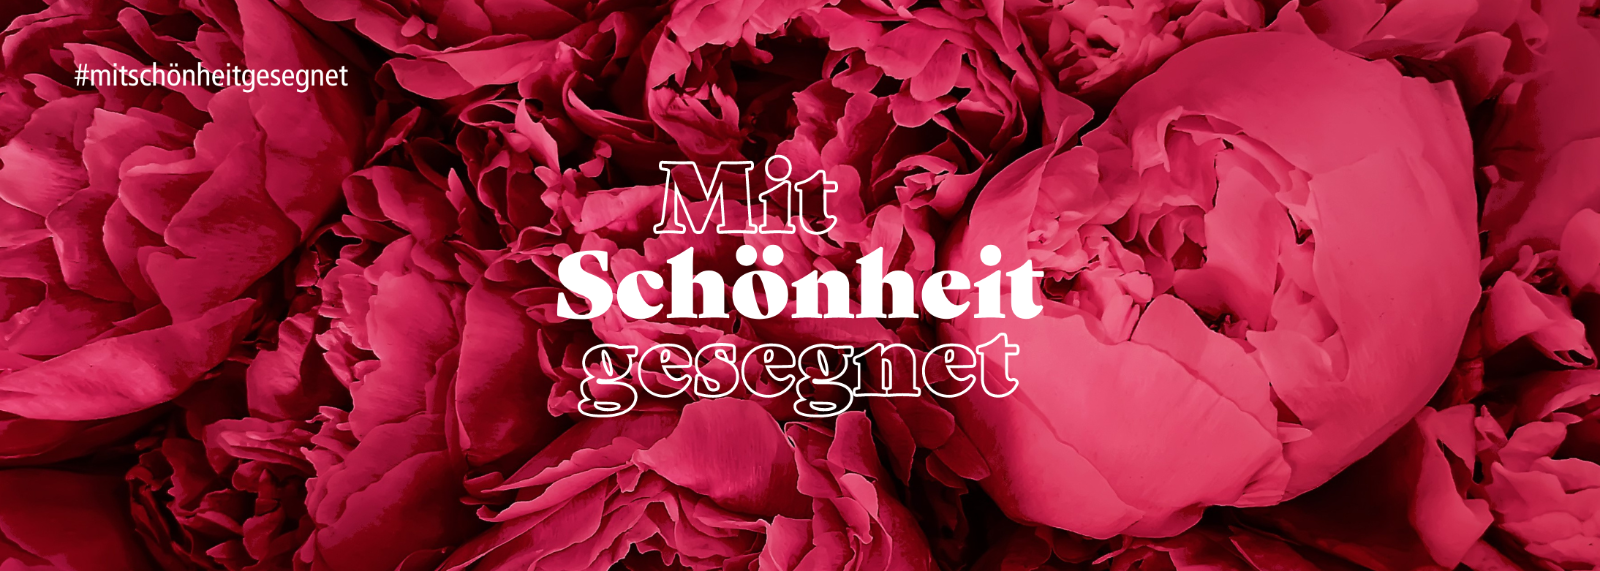 Banner Homepage Mit Schönheit gesegnet (700 × 250 px)